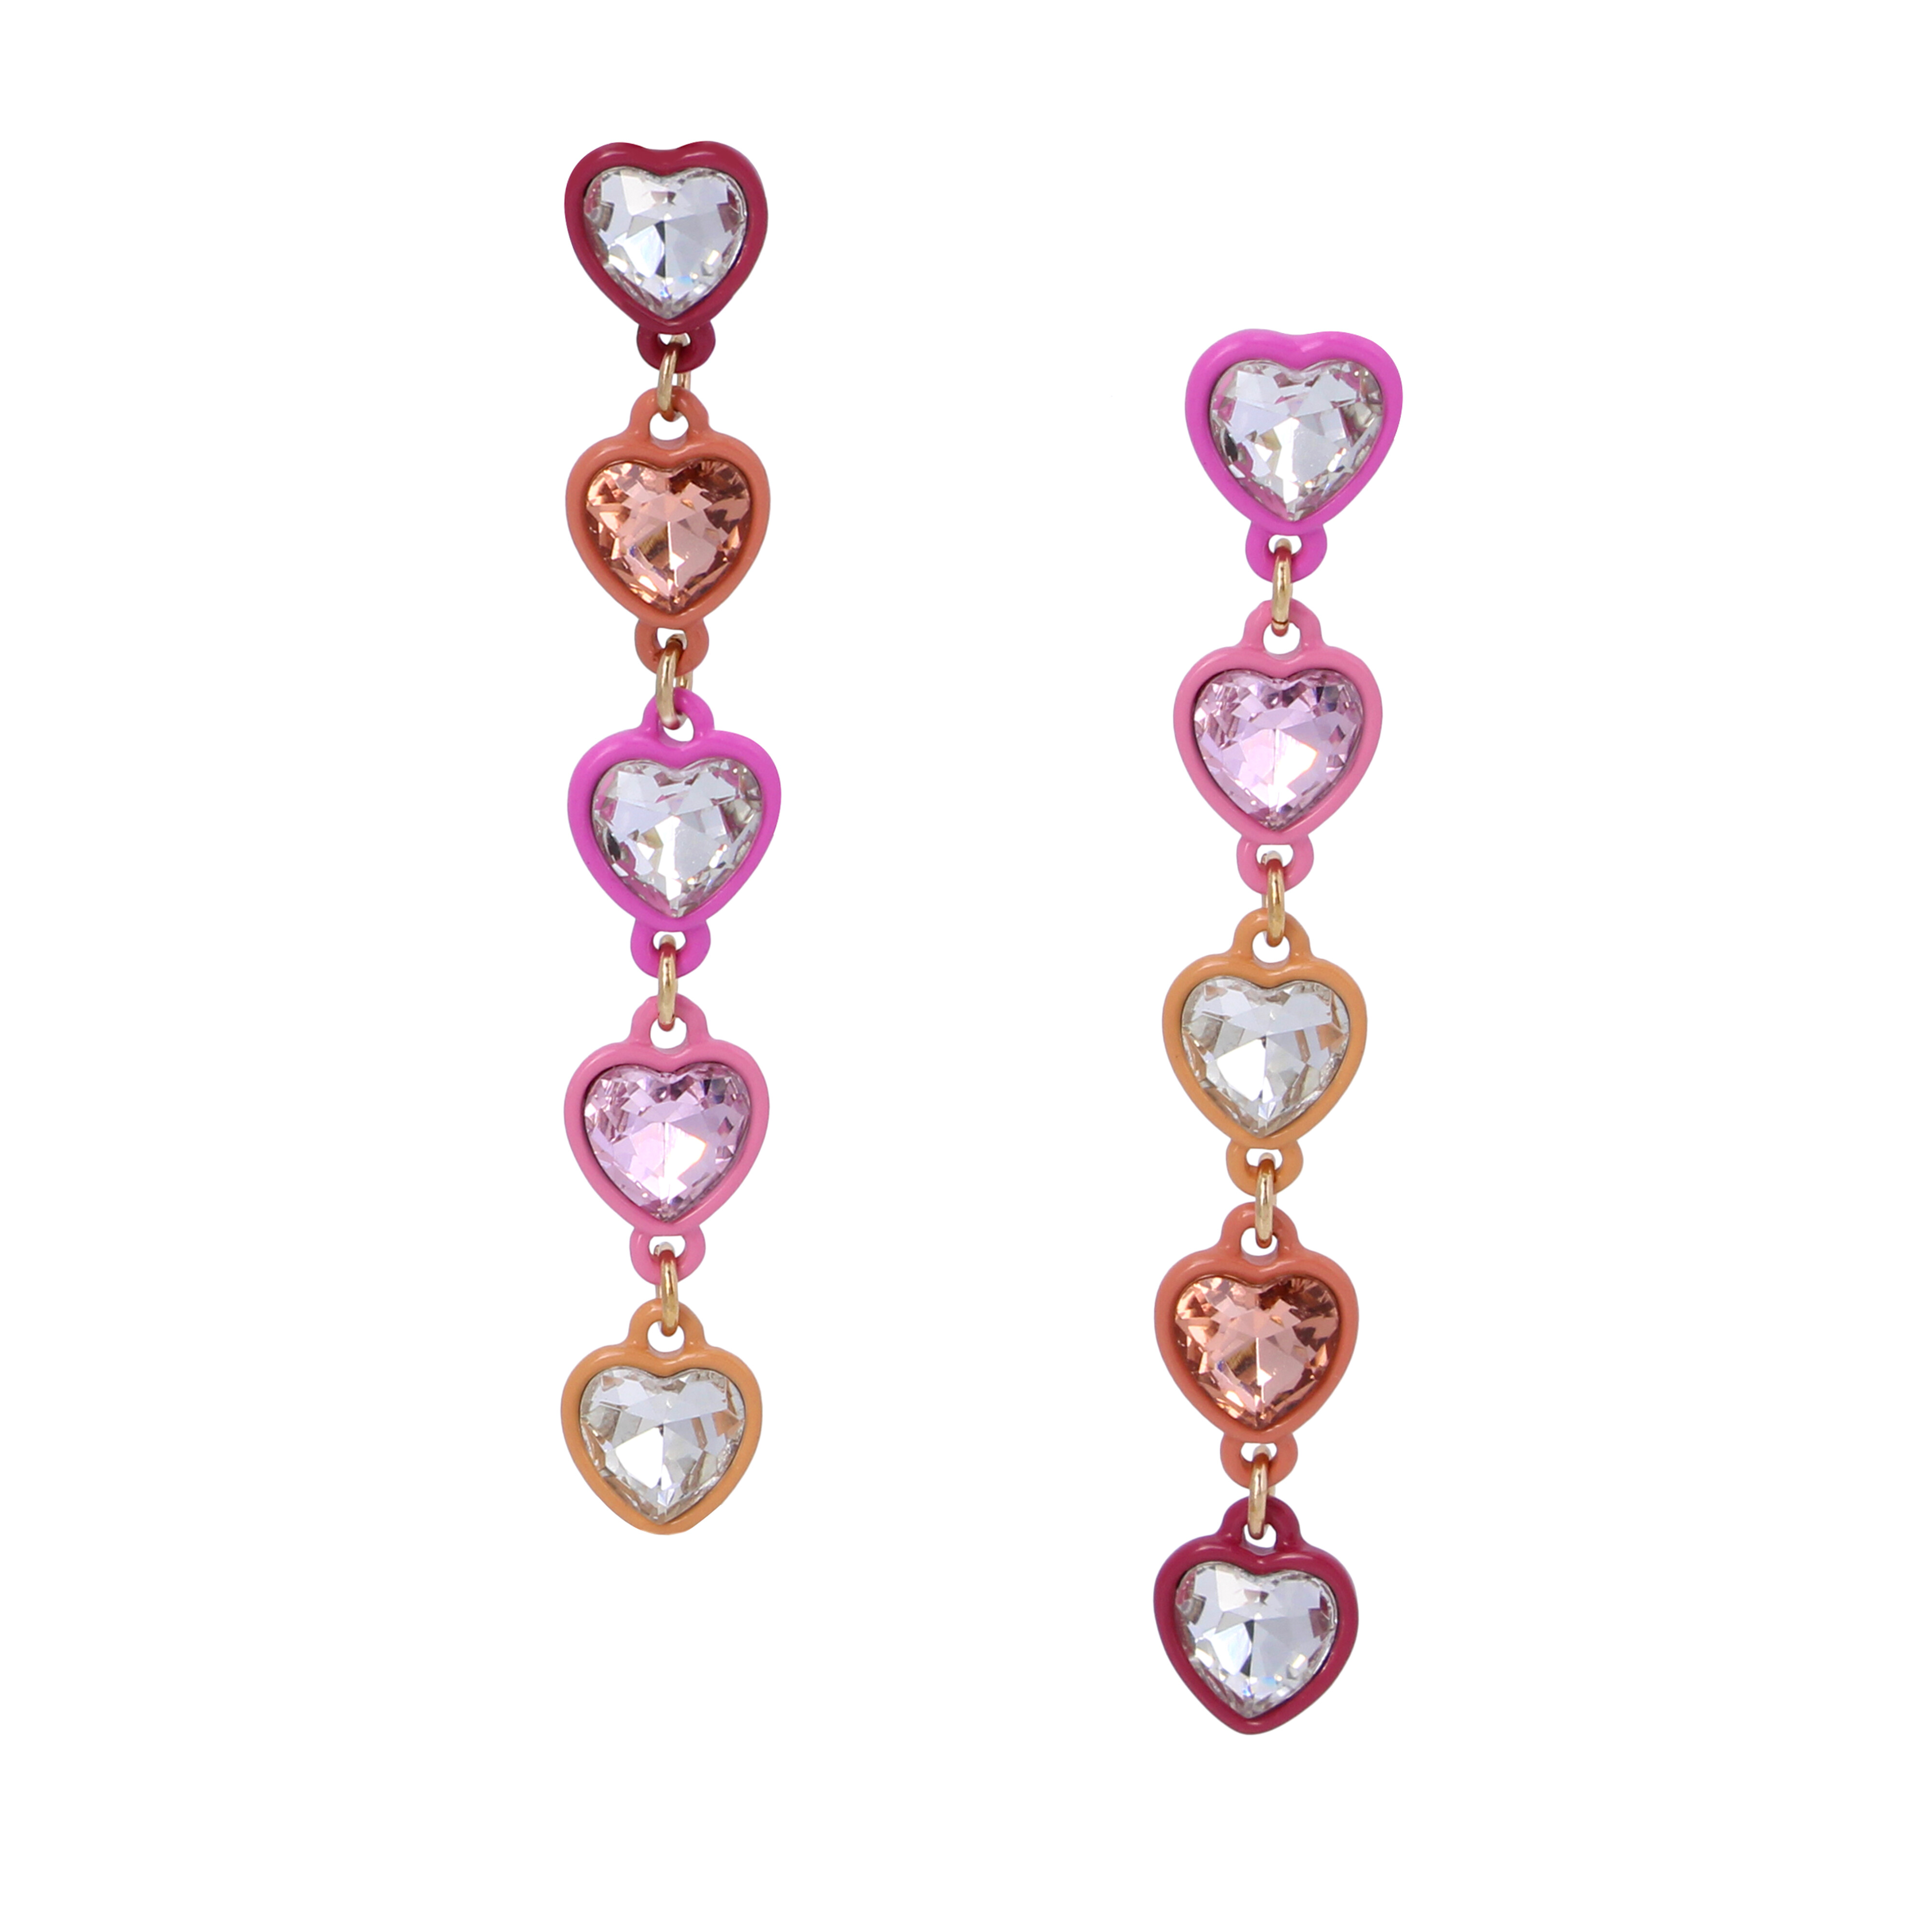 Bijuterii Femei Betsey Johnson Stone Heart Linear Earrings Pink